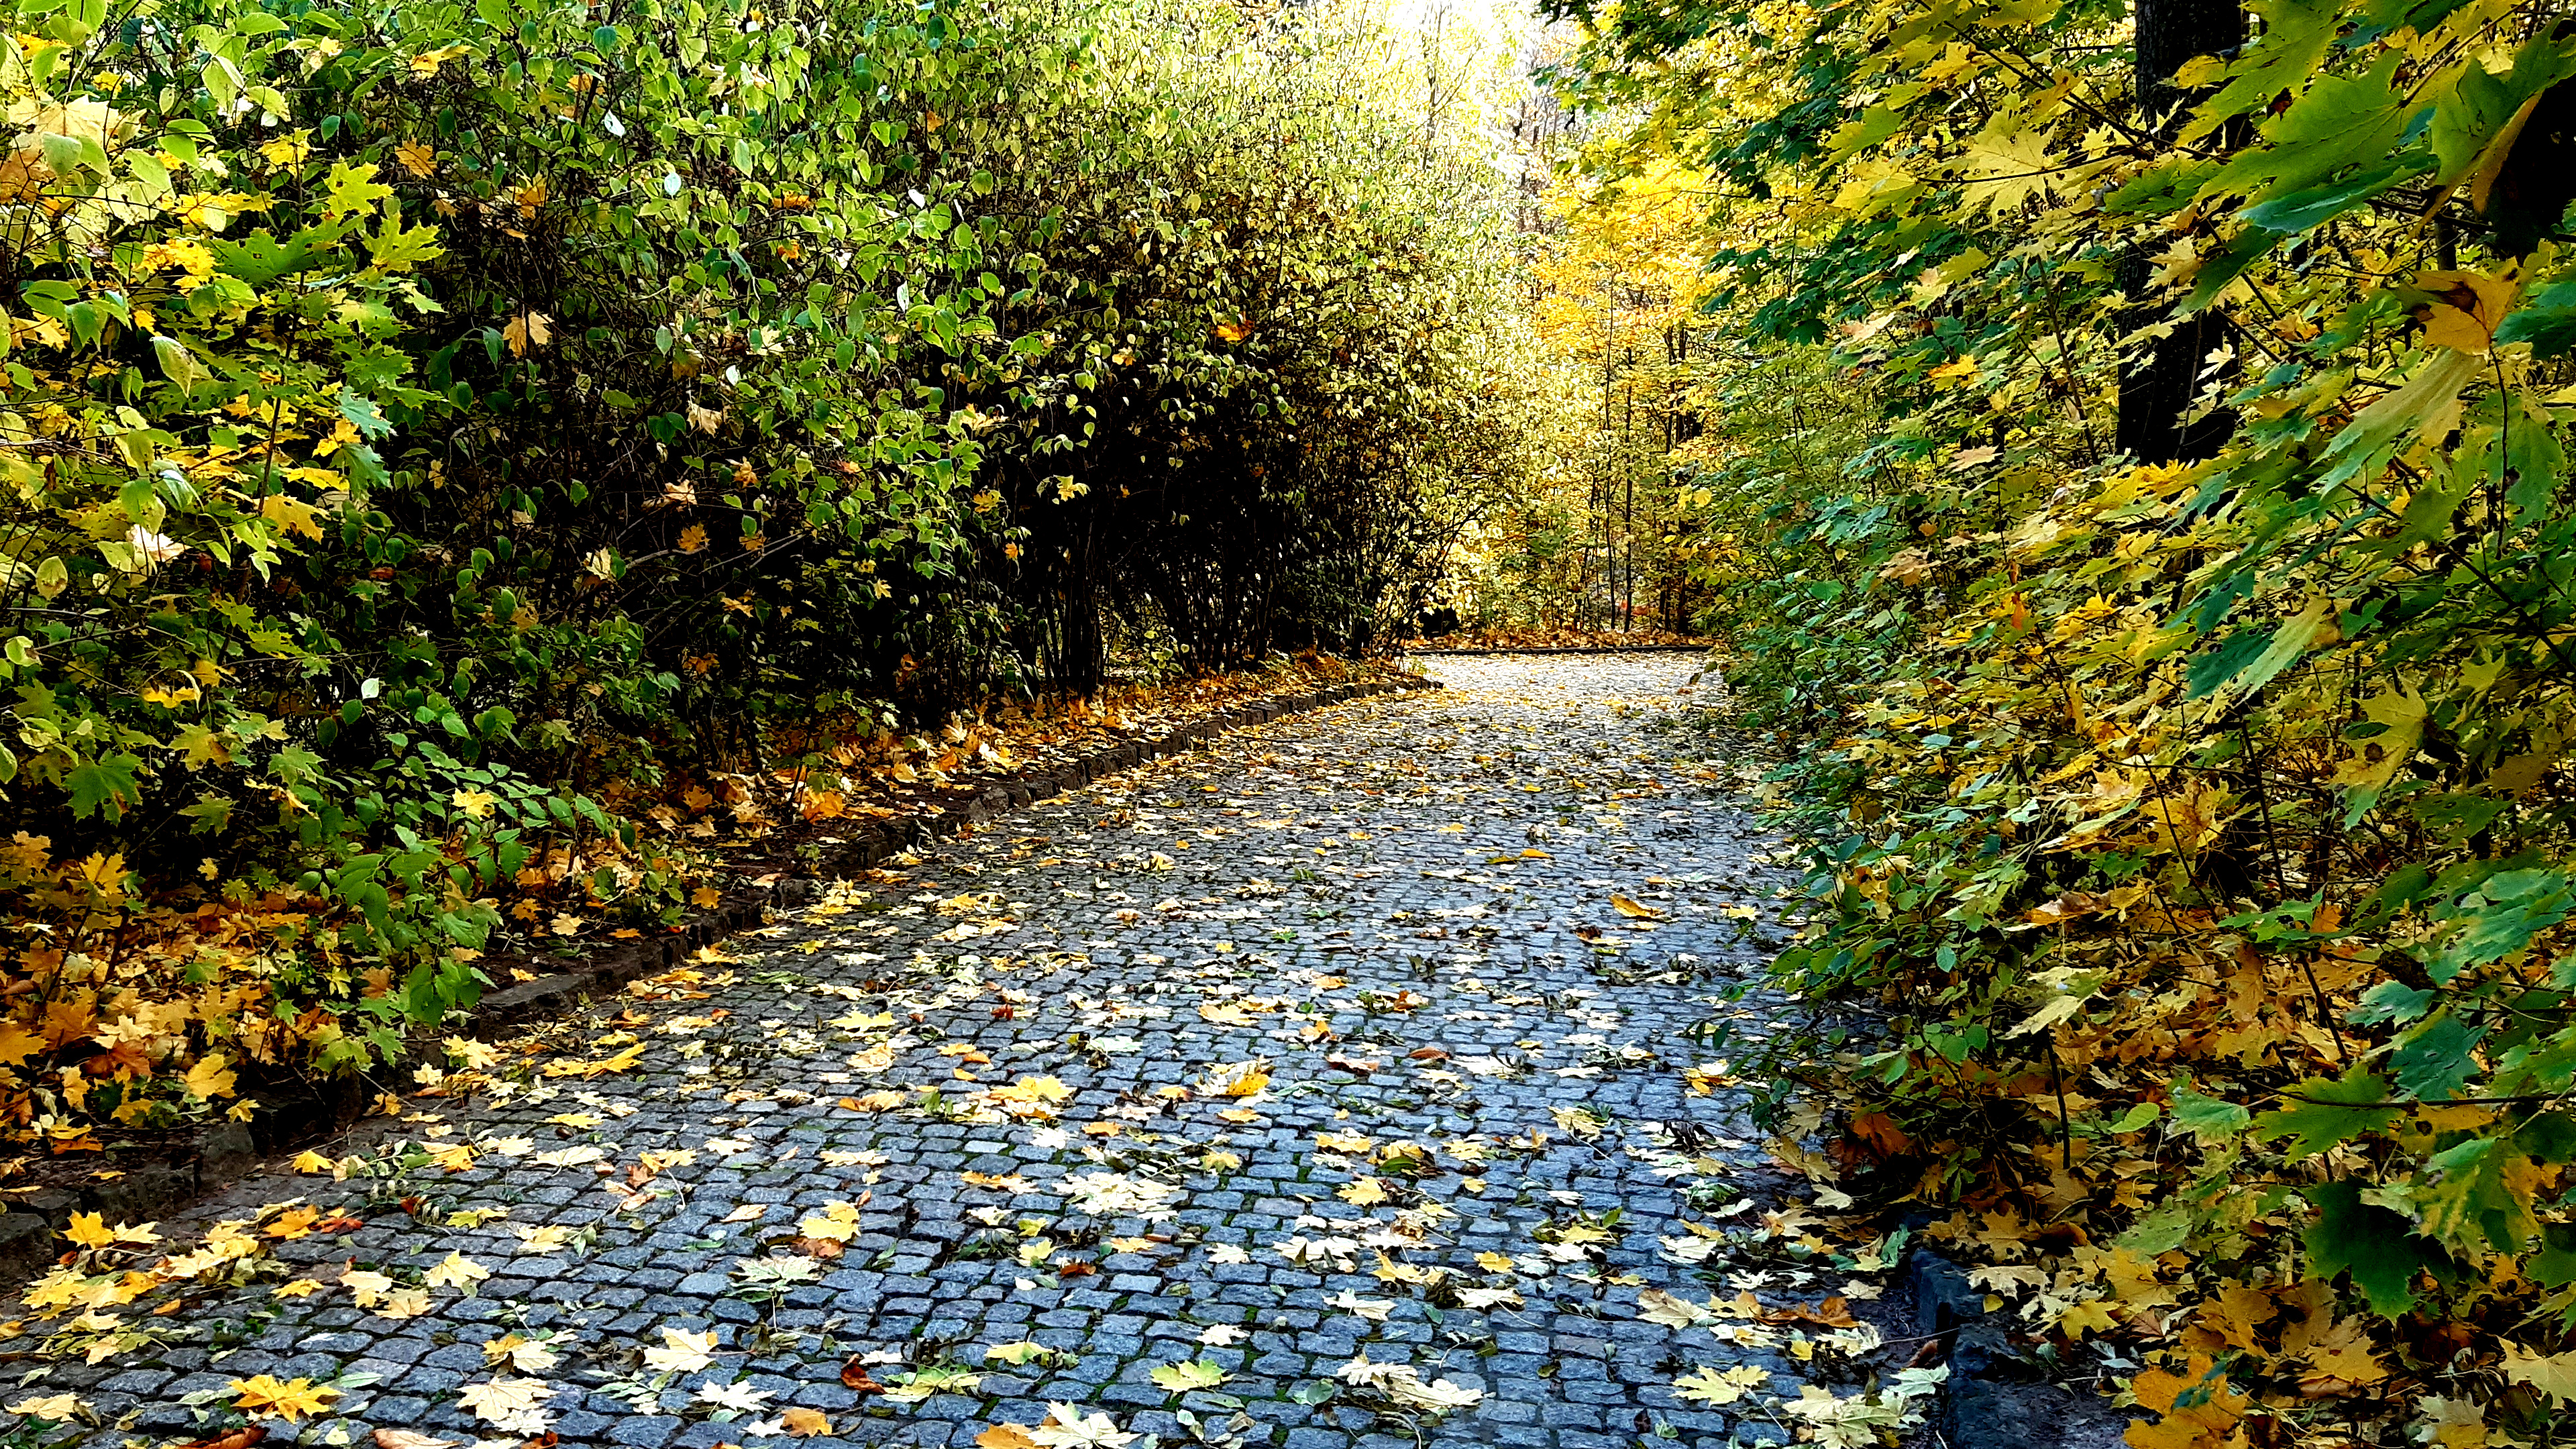 3840х2160 4к обои, осенний пейзаж, тротуар покрытый опалыми листьями